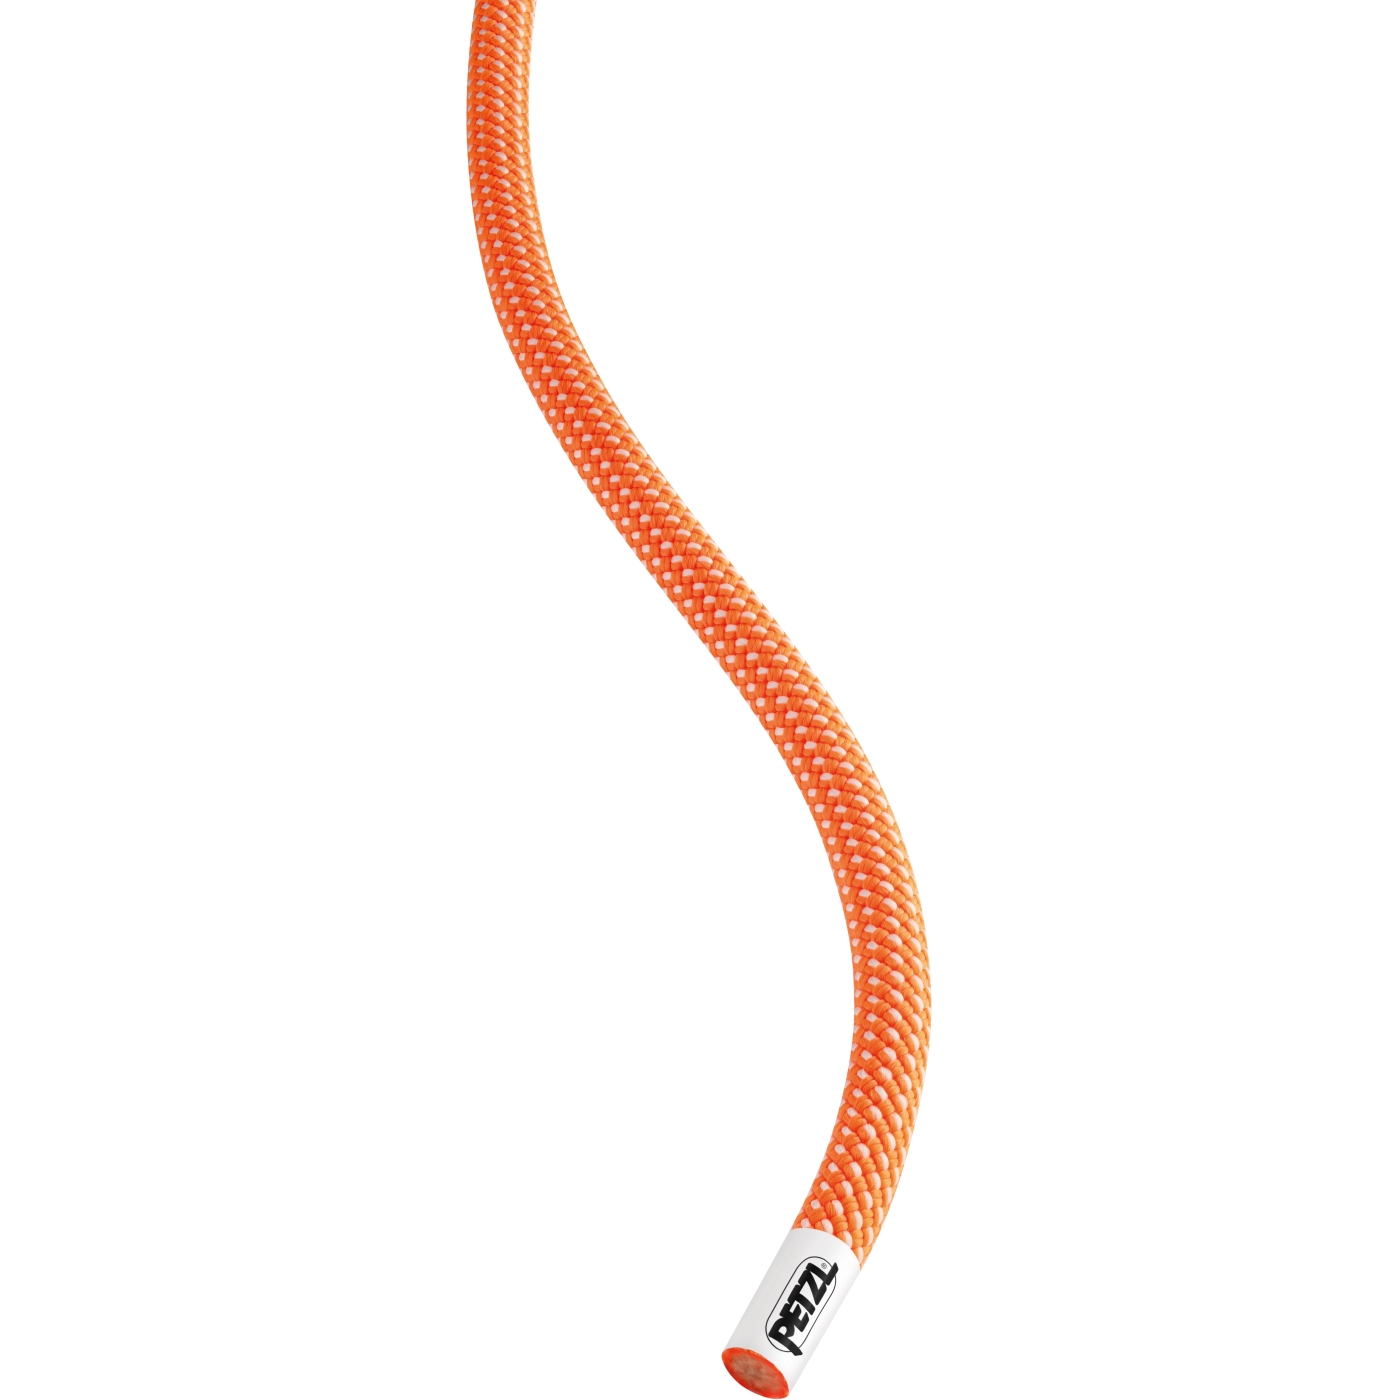 Produktbild von Petzl Volta 9.2mm Seil - 80m - orange